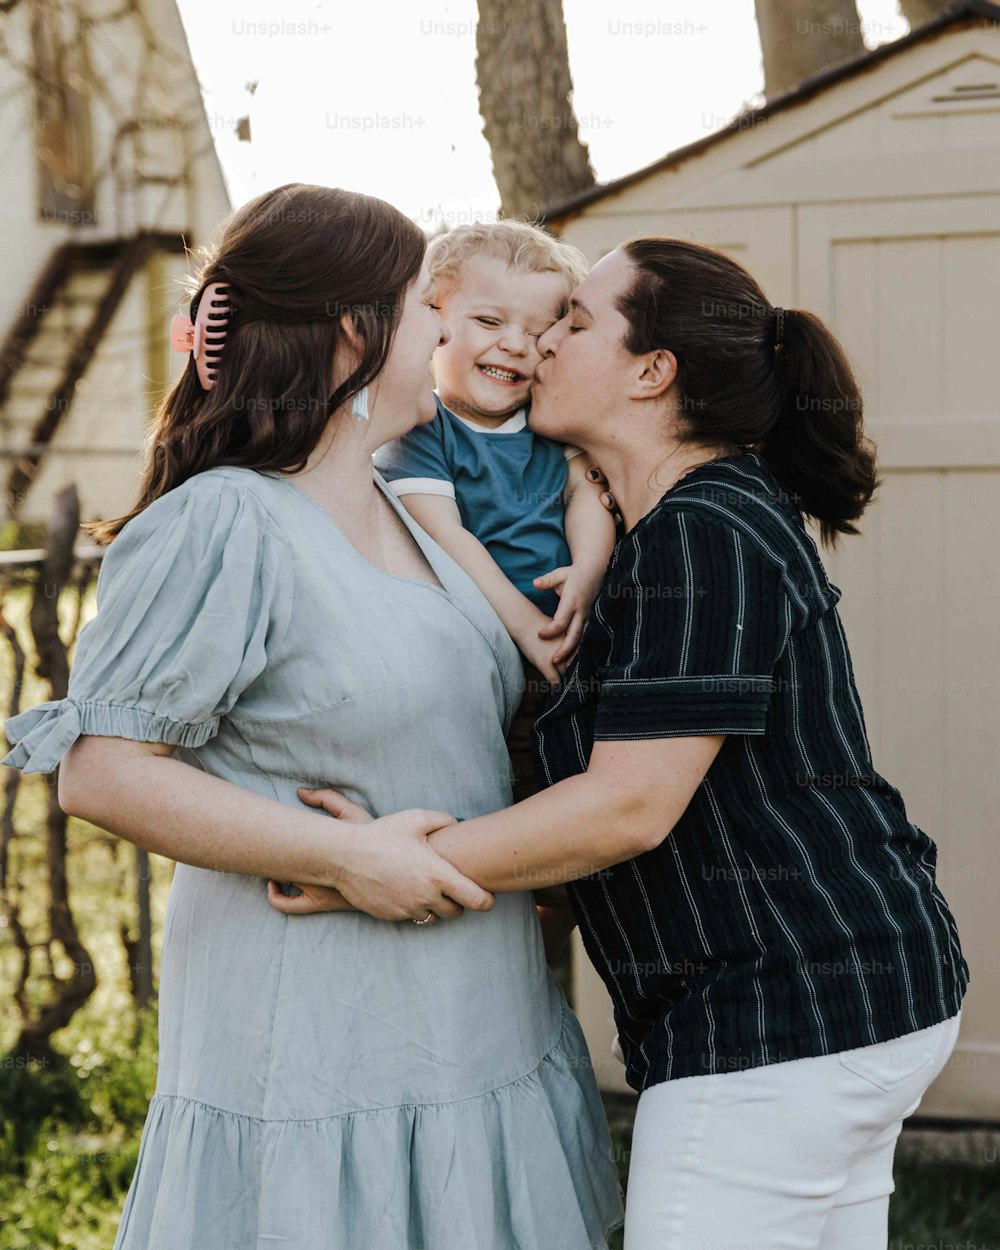 Eine Frau, die ein Baby hält und eine andere Frau küsst